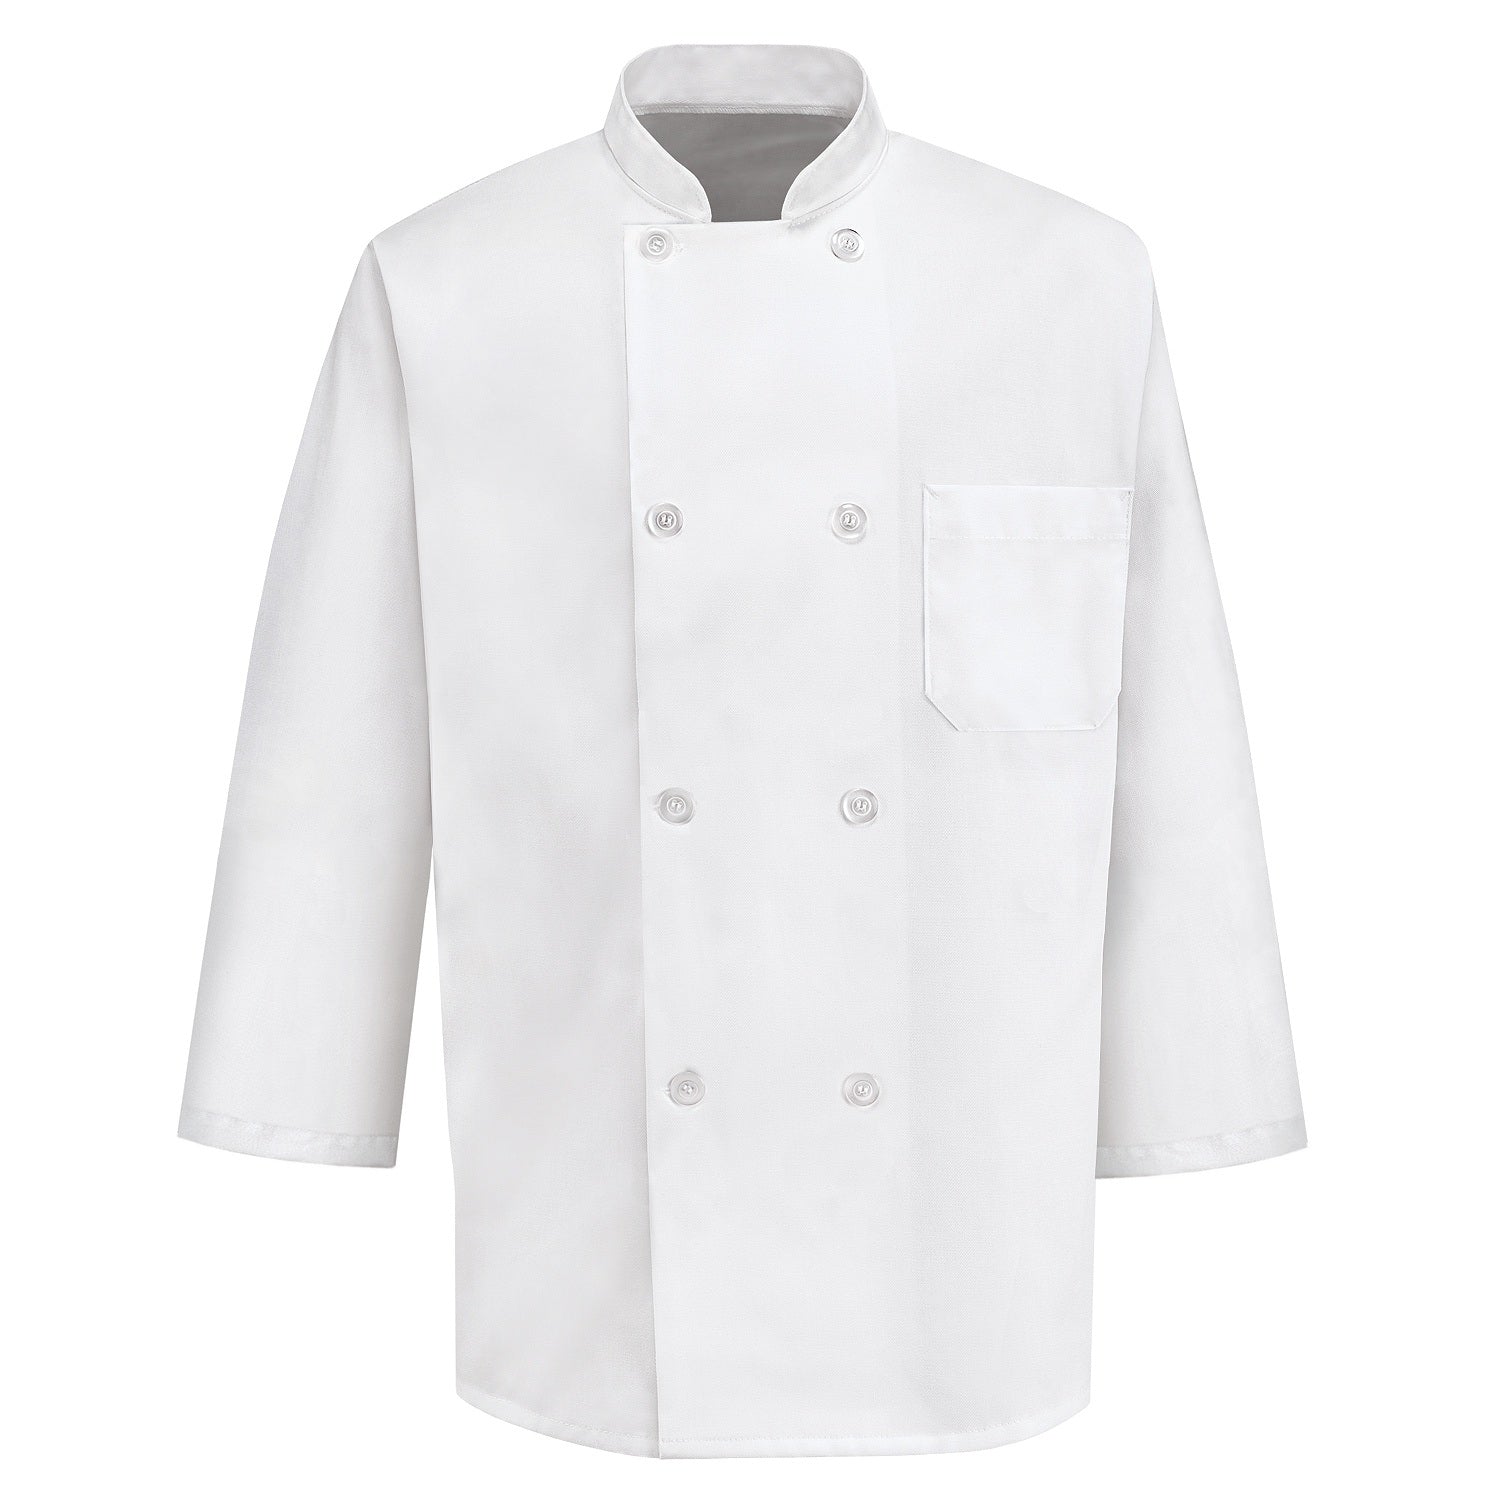 Classic 8 Button Chef Coat